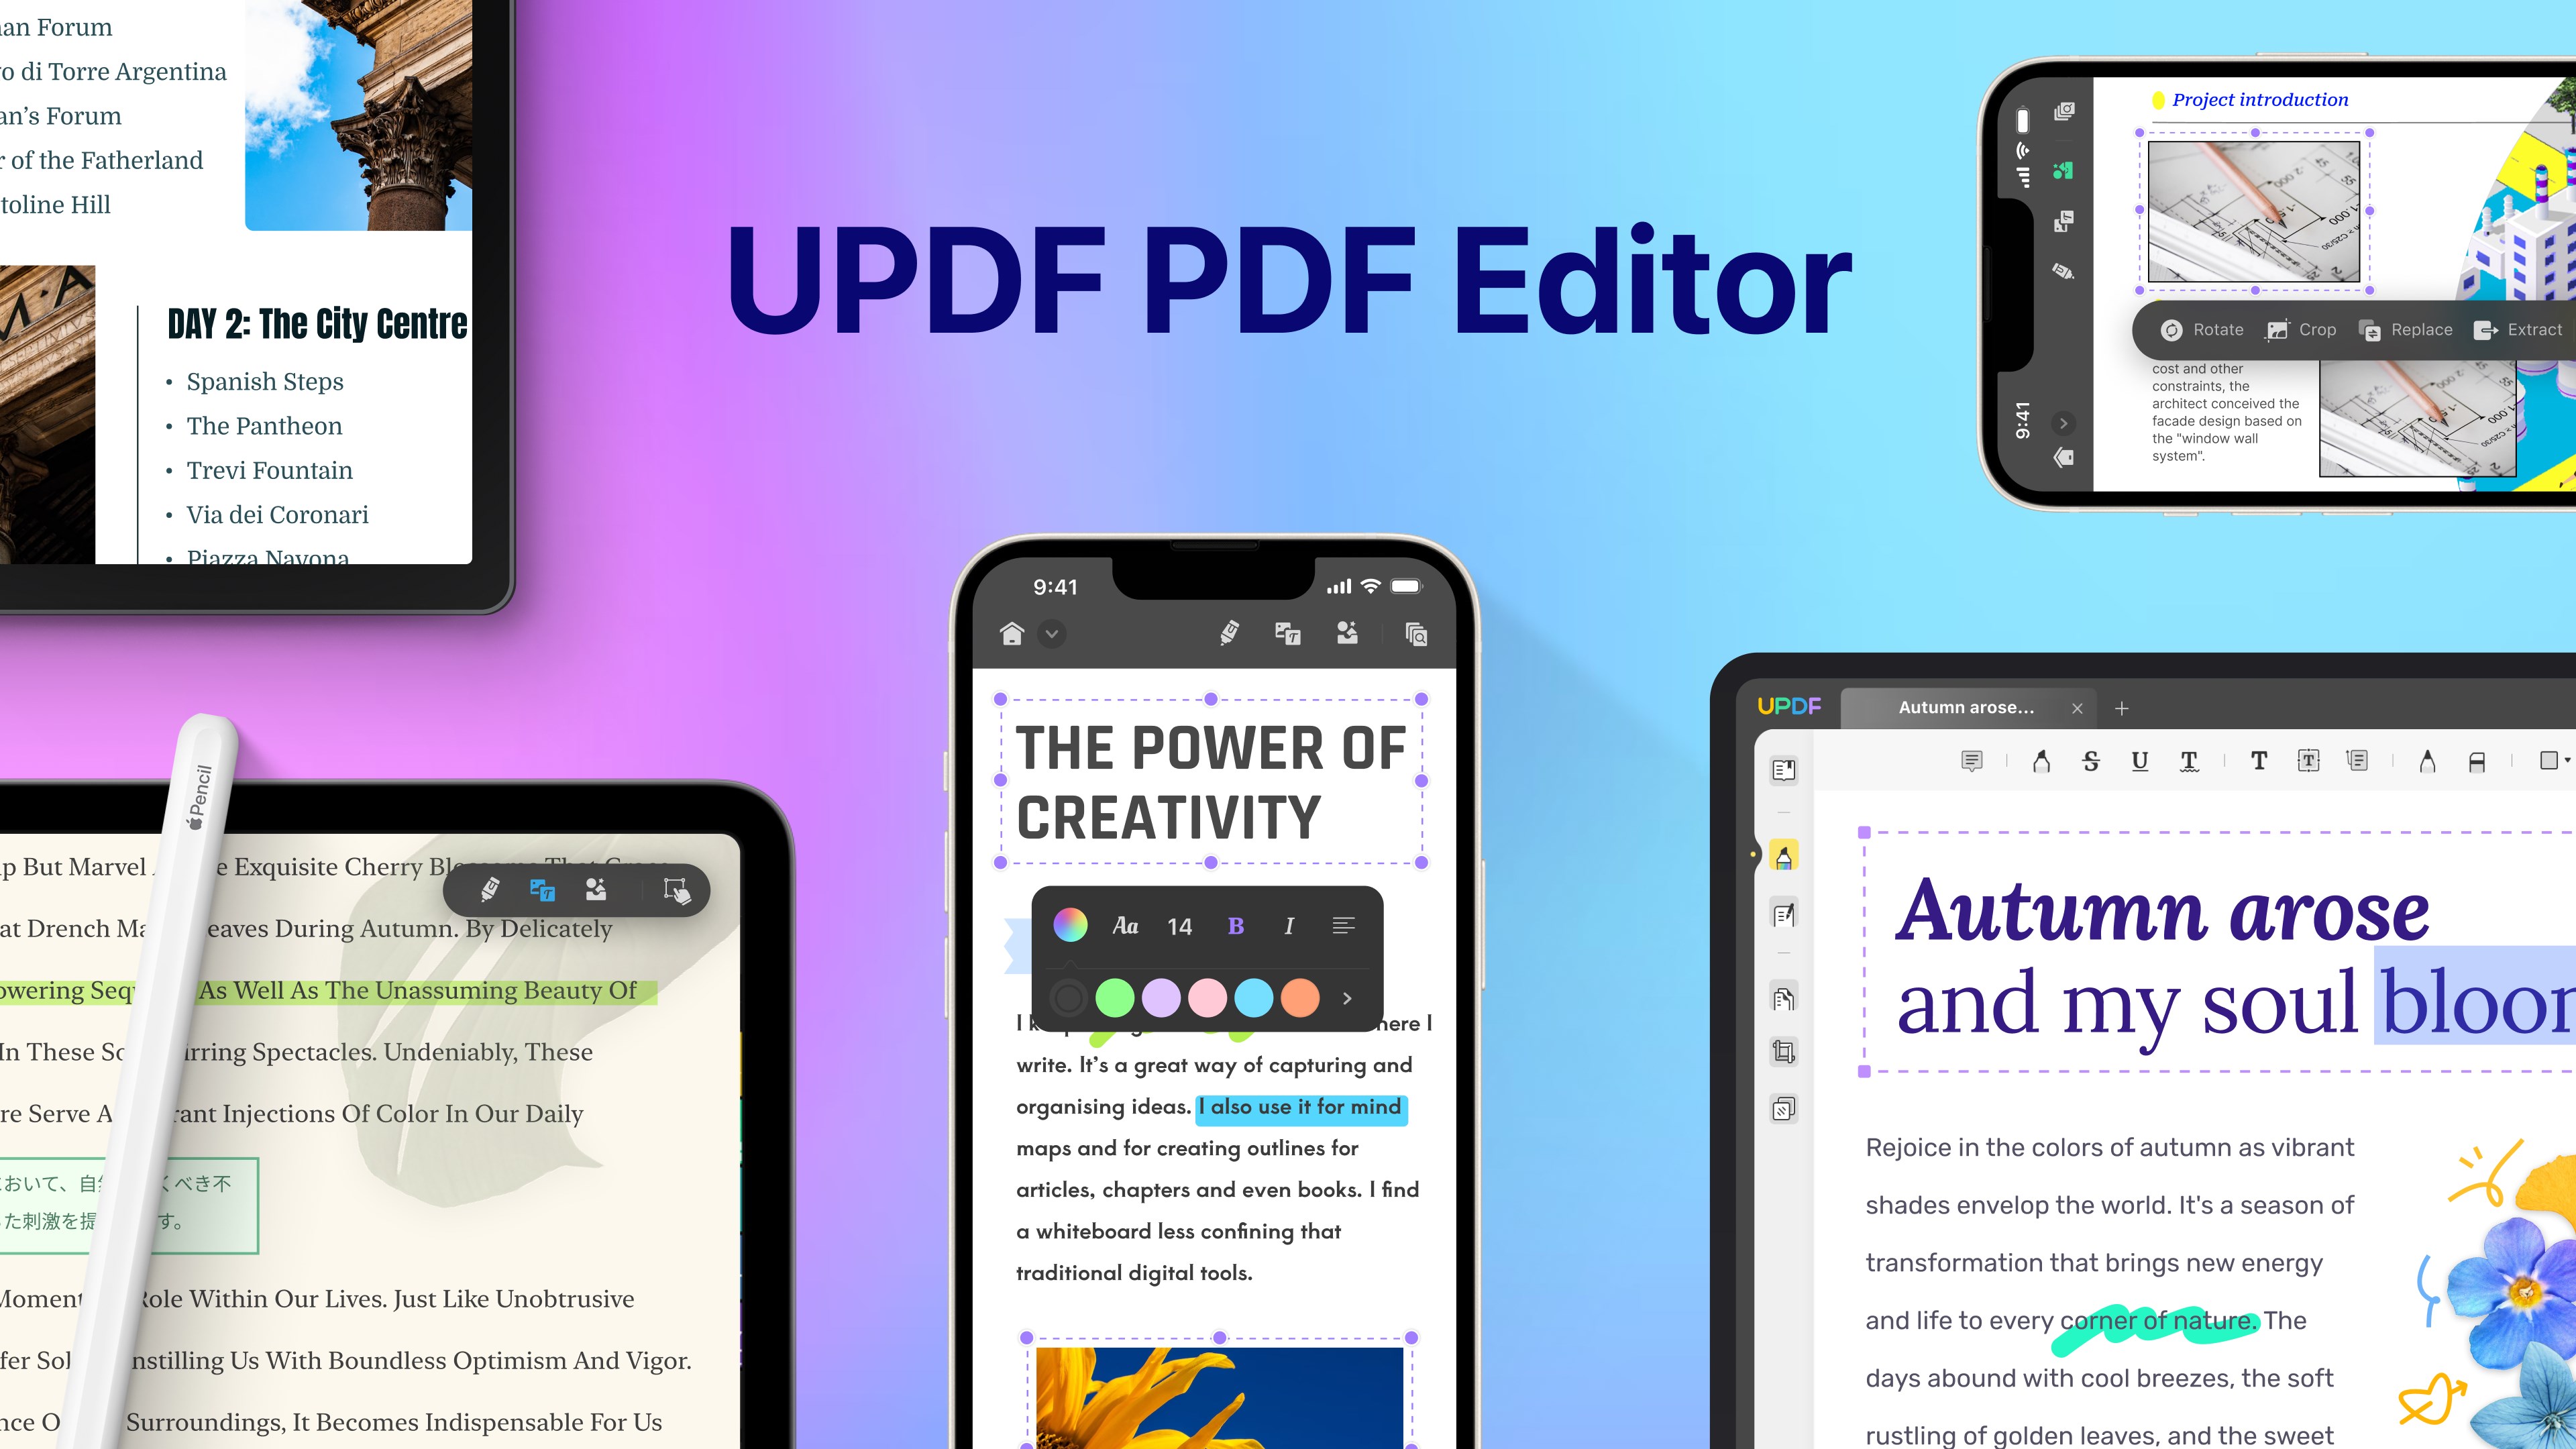 UPDF neden piyasadaki en kapsamlı PDF editörlerden biri?